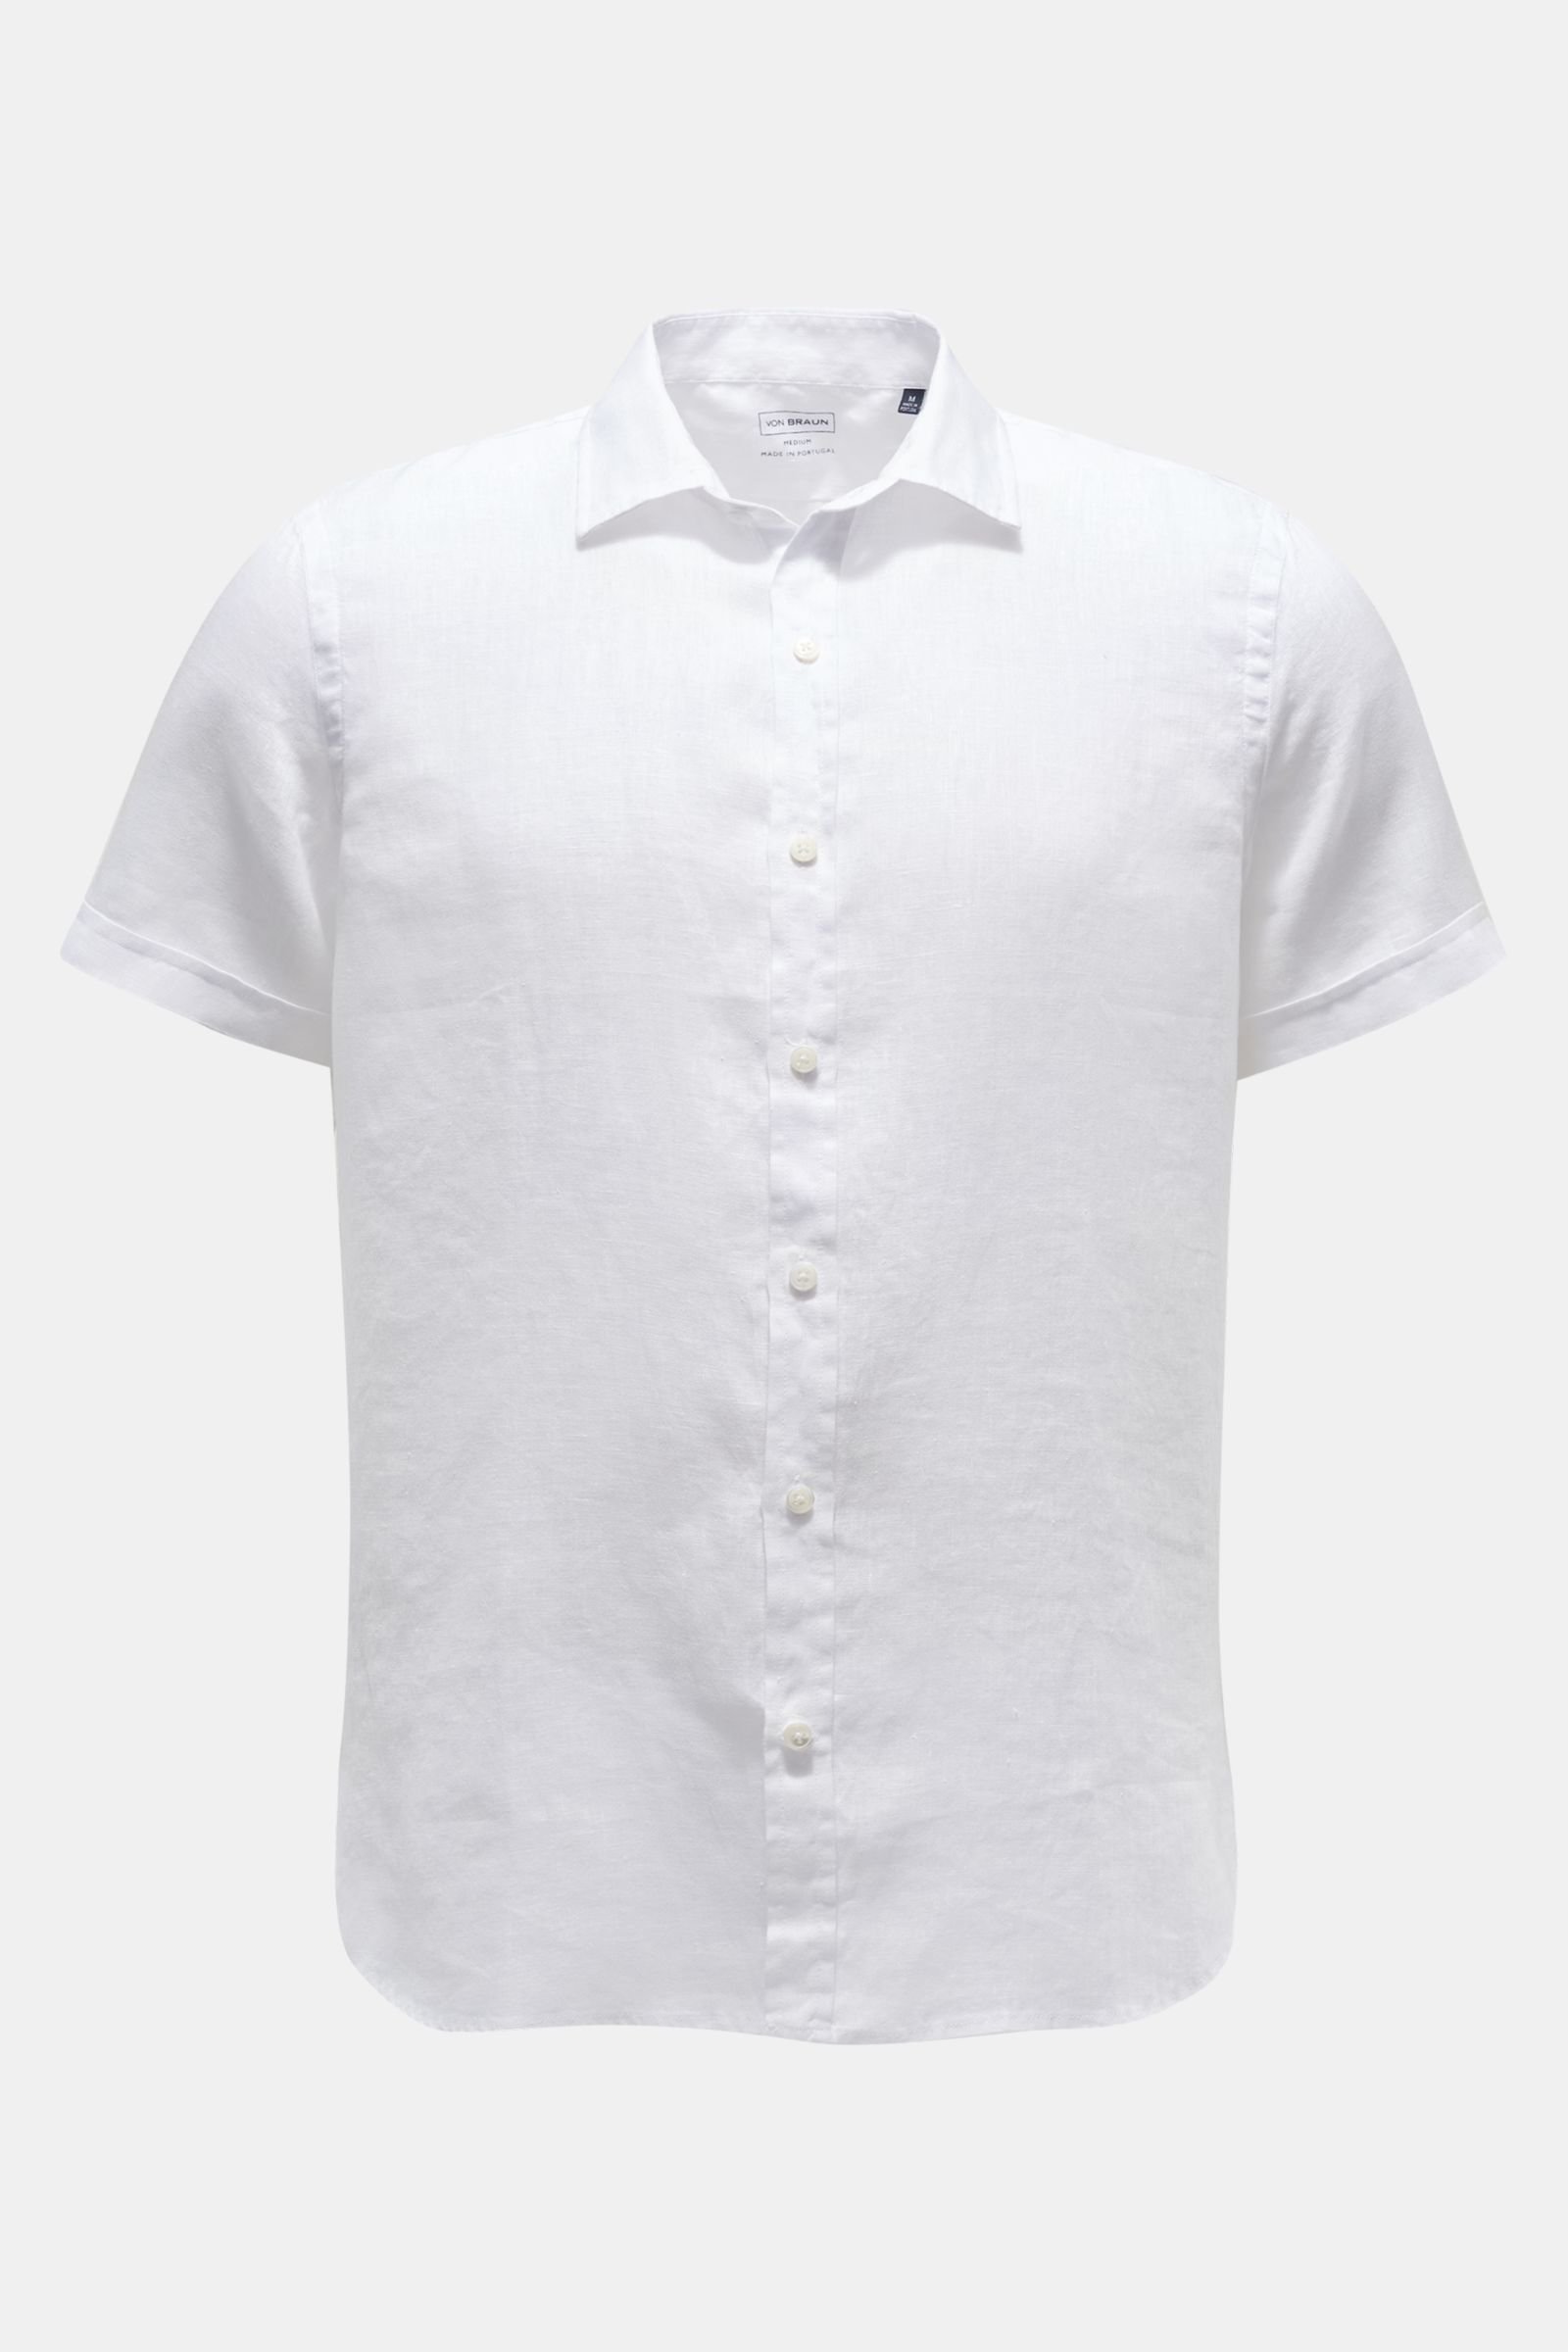 Linen short-sleeve shirt Kent collar white